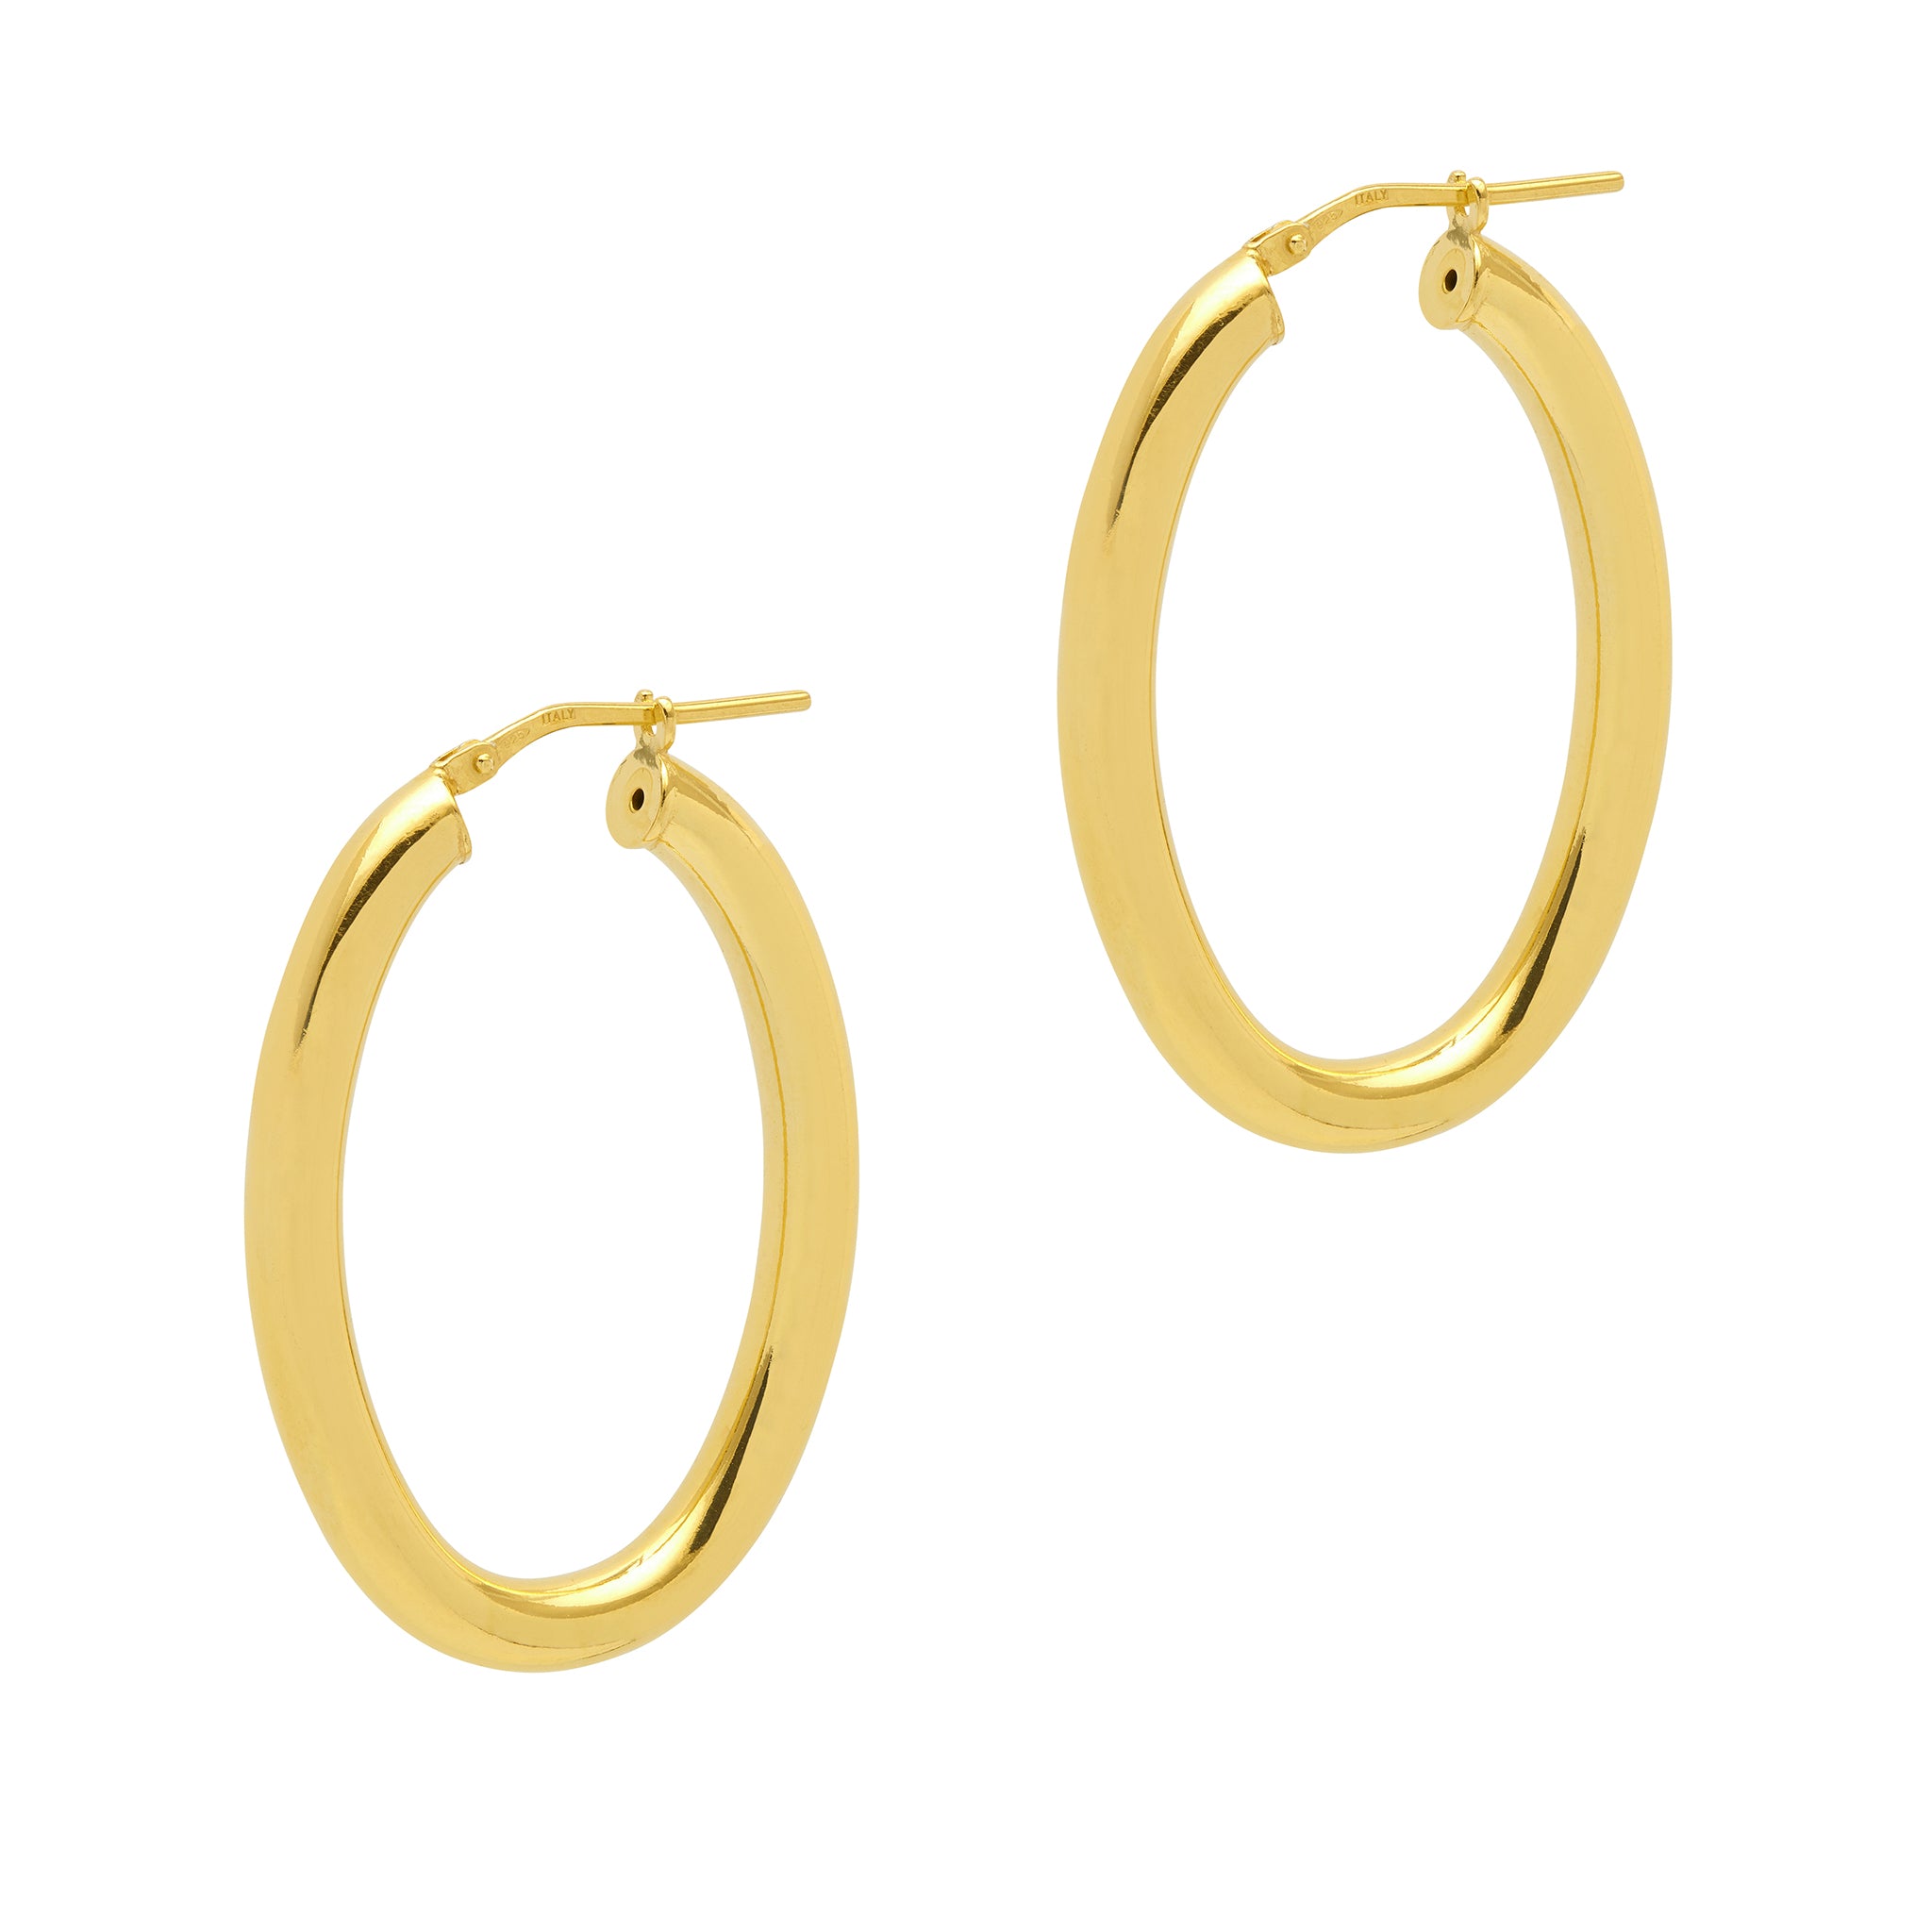 Shiny Gold Luxury Oval Hoop Earrings